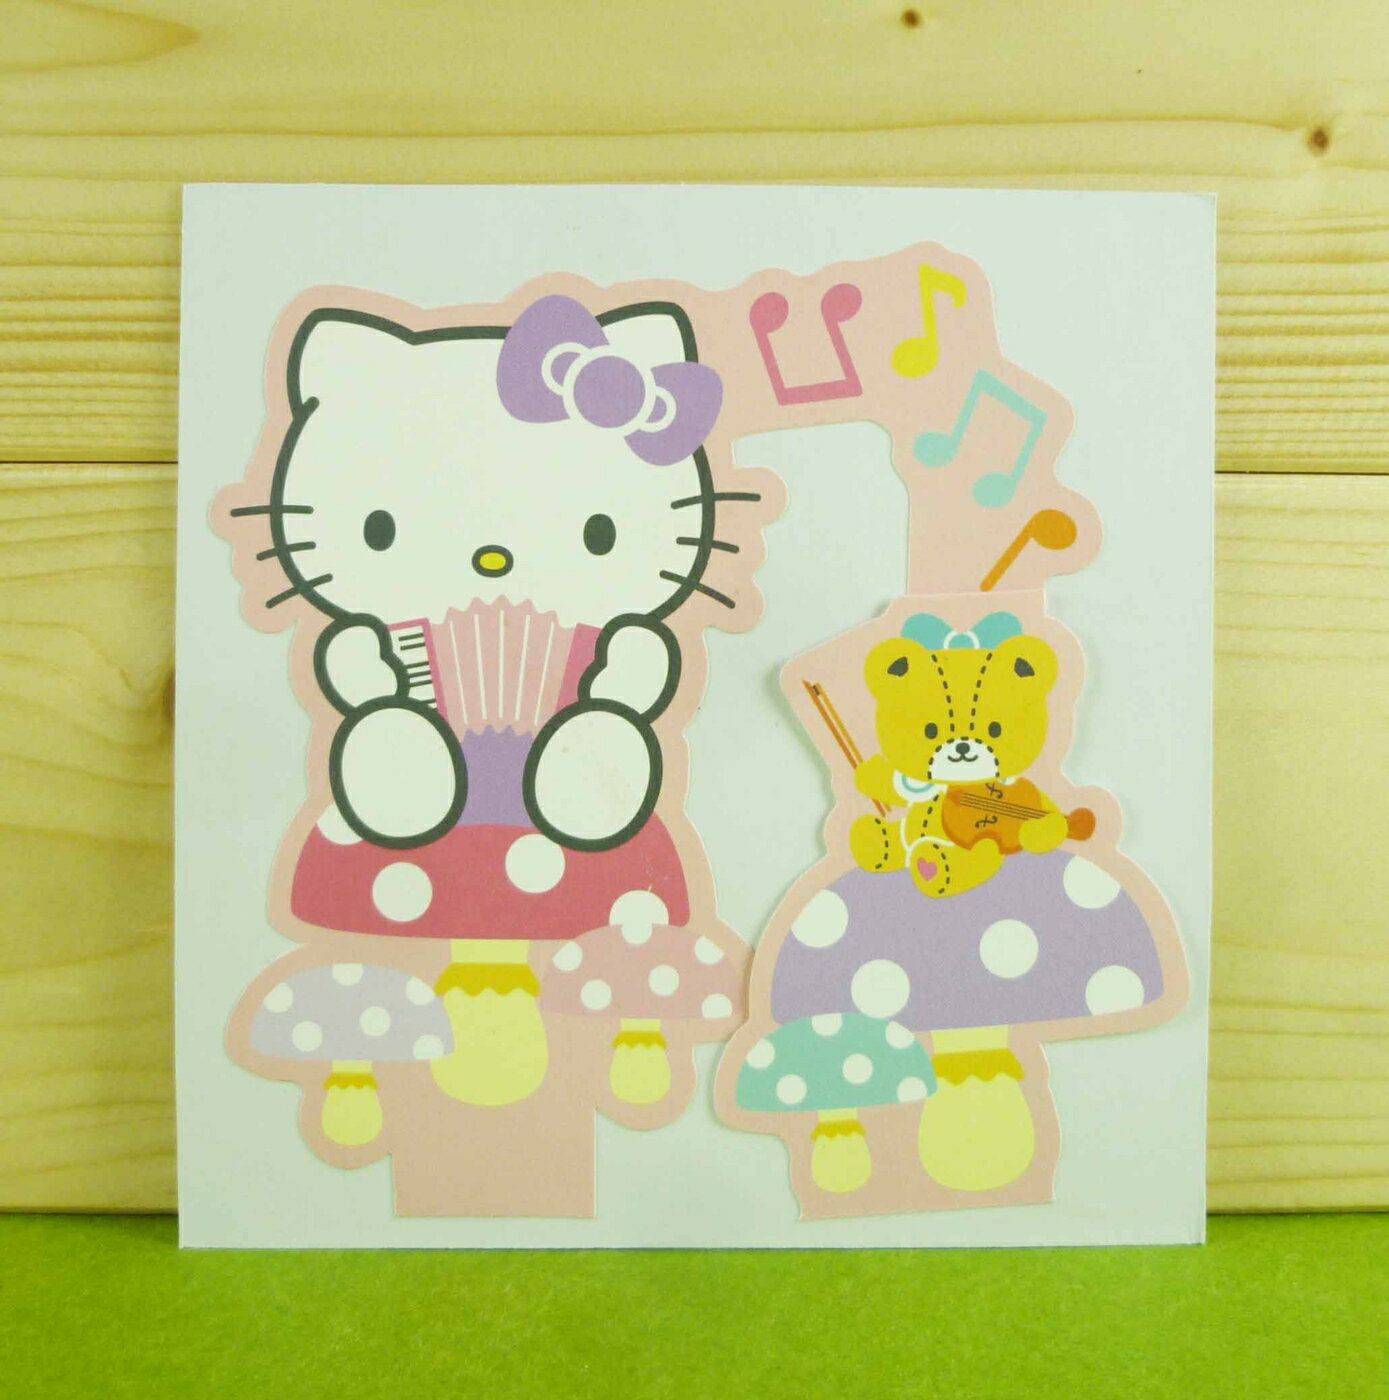 【震撼精品百貨】Hello Kitty 凱蒂貓 卡片-手風琴(M) 震撼日式精品百貨